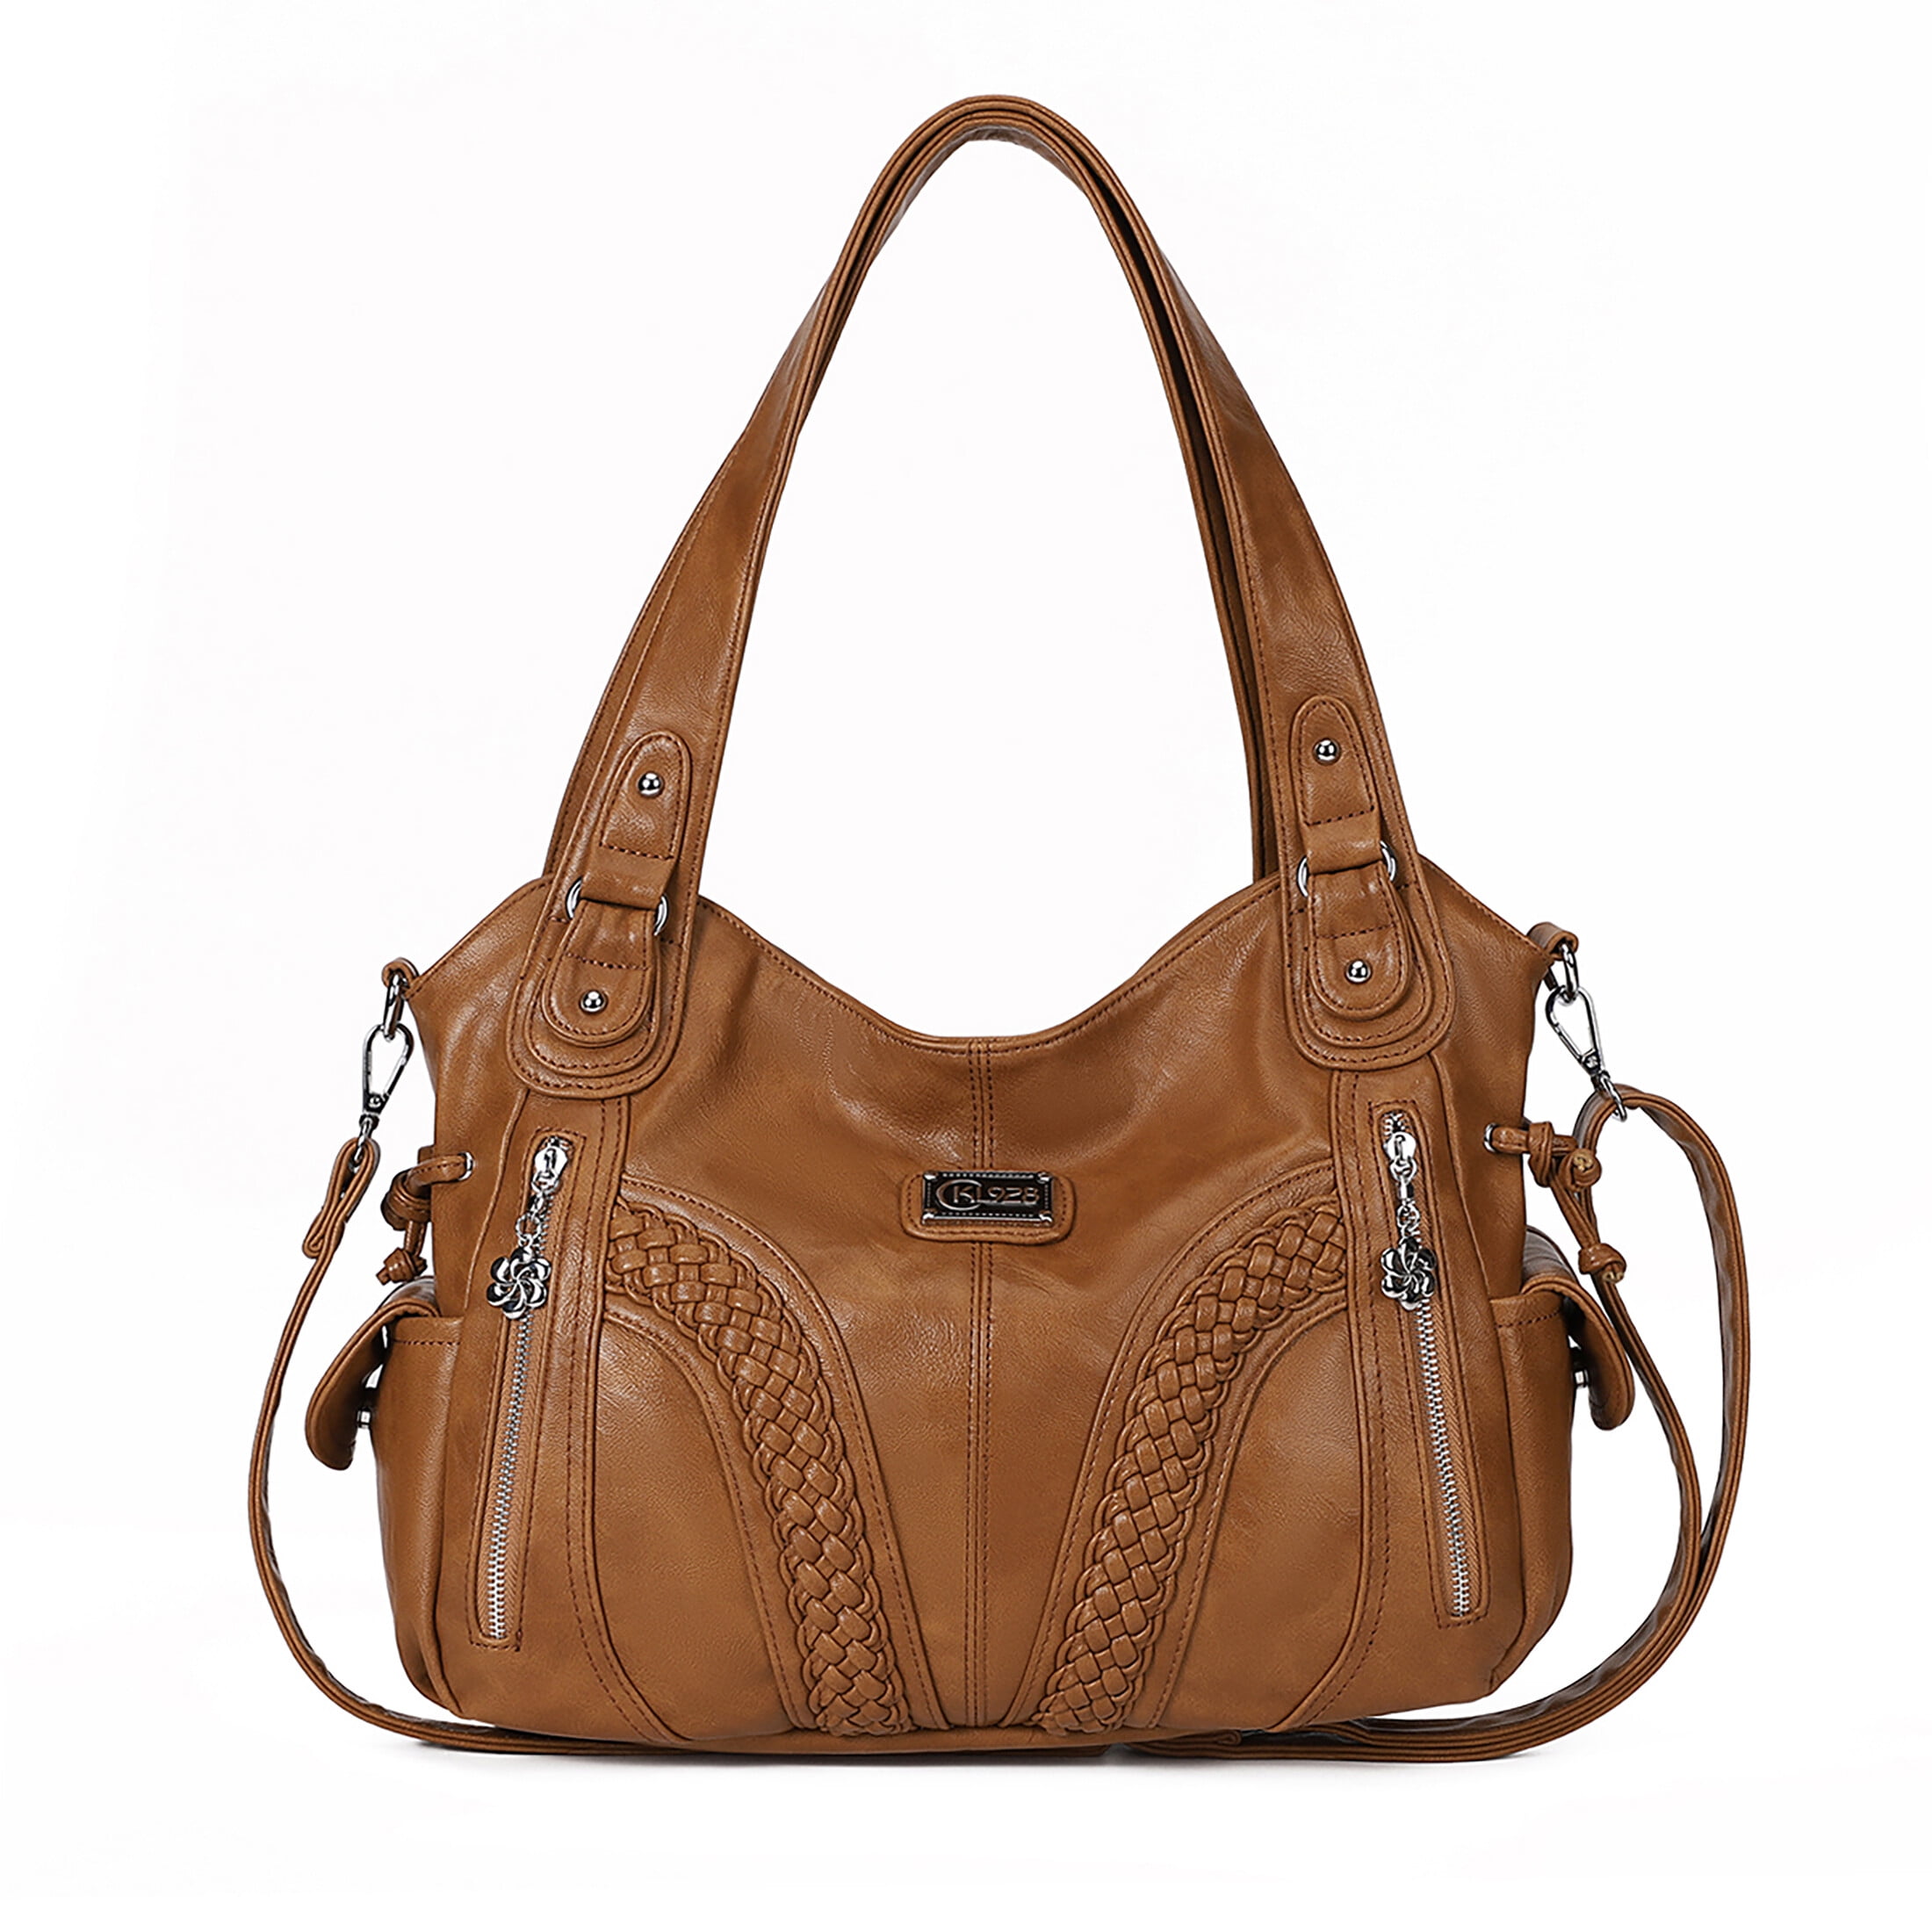 KL928 Large Hobo Bag for Women Vintage PU Leather Braided Handbag ...